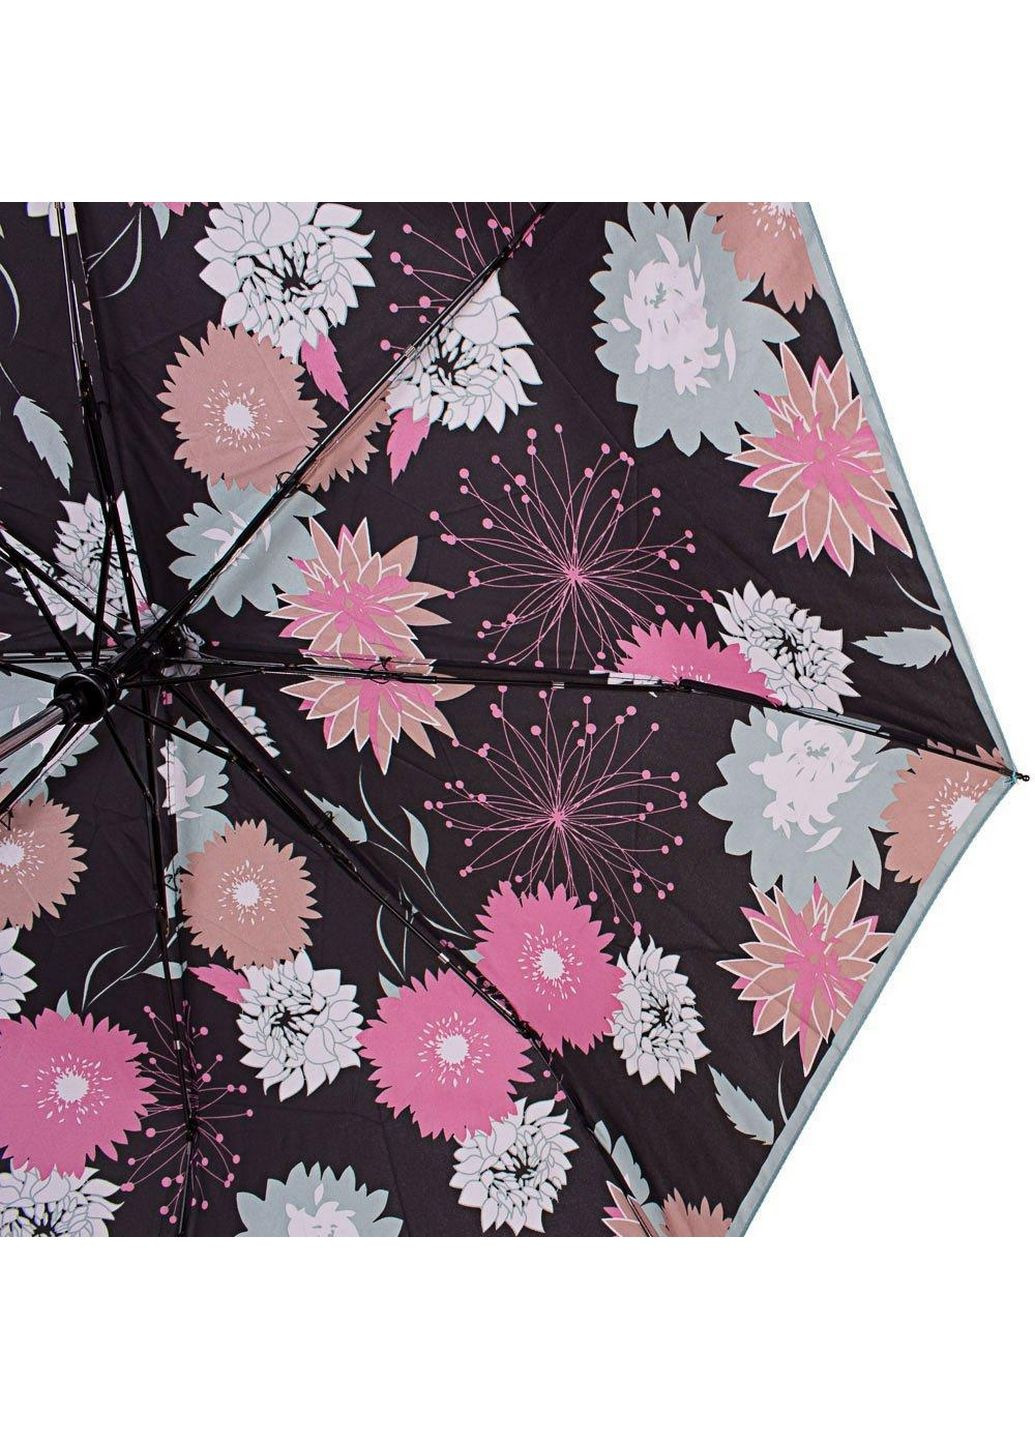 Женский складной зонт полуавтомат Airton (288046576)